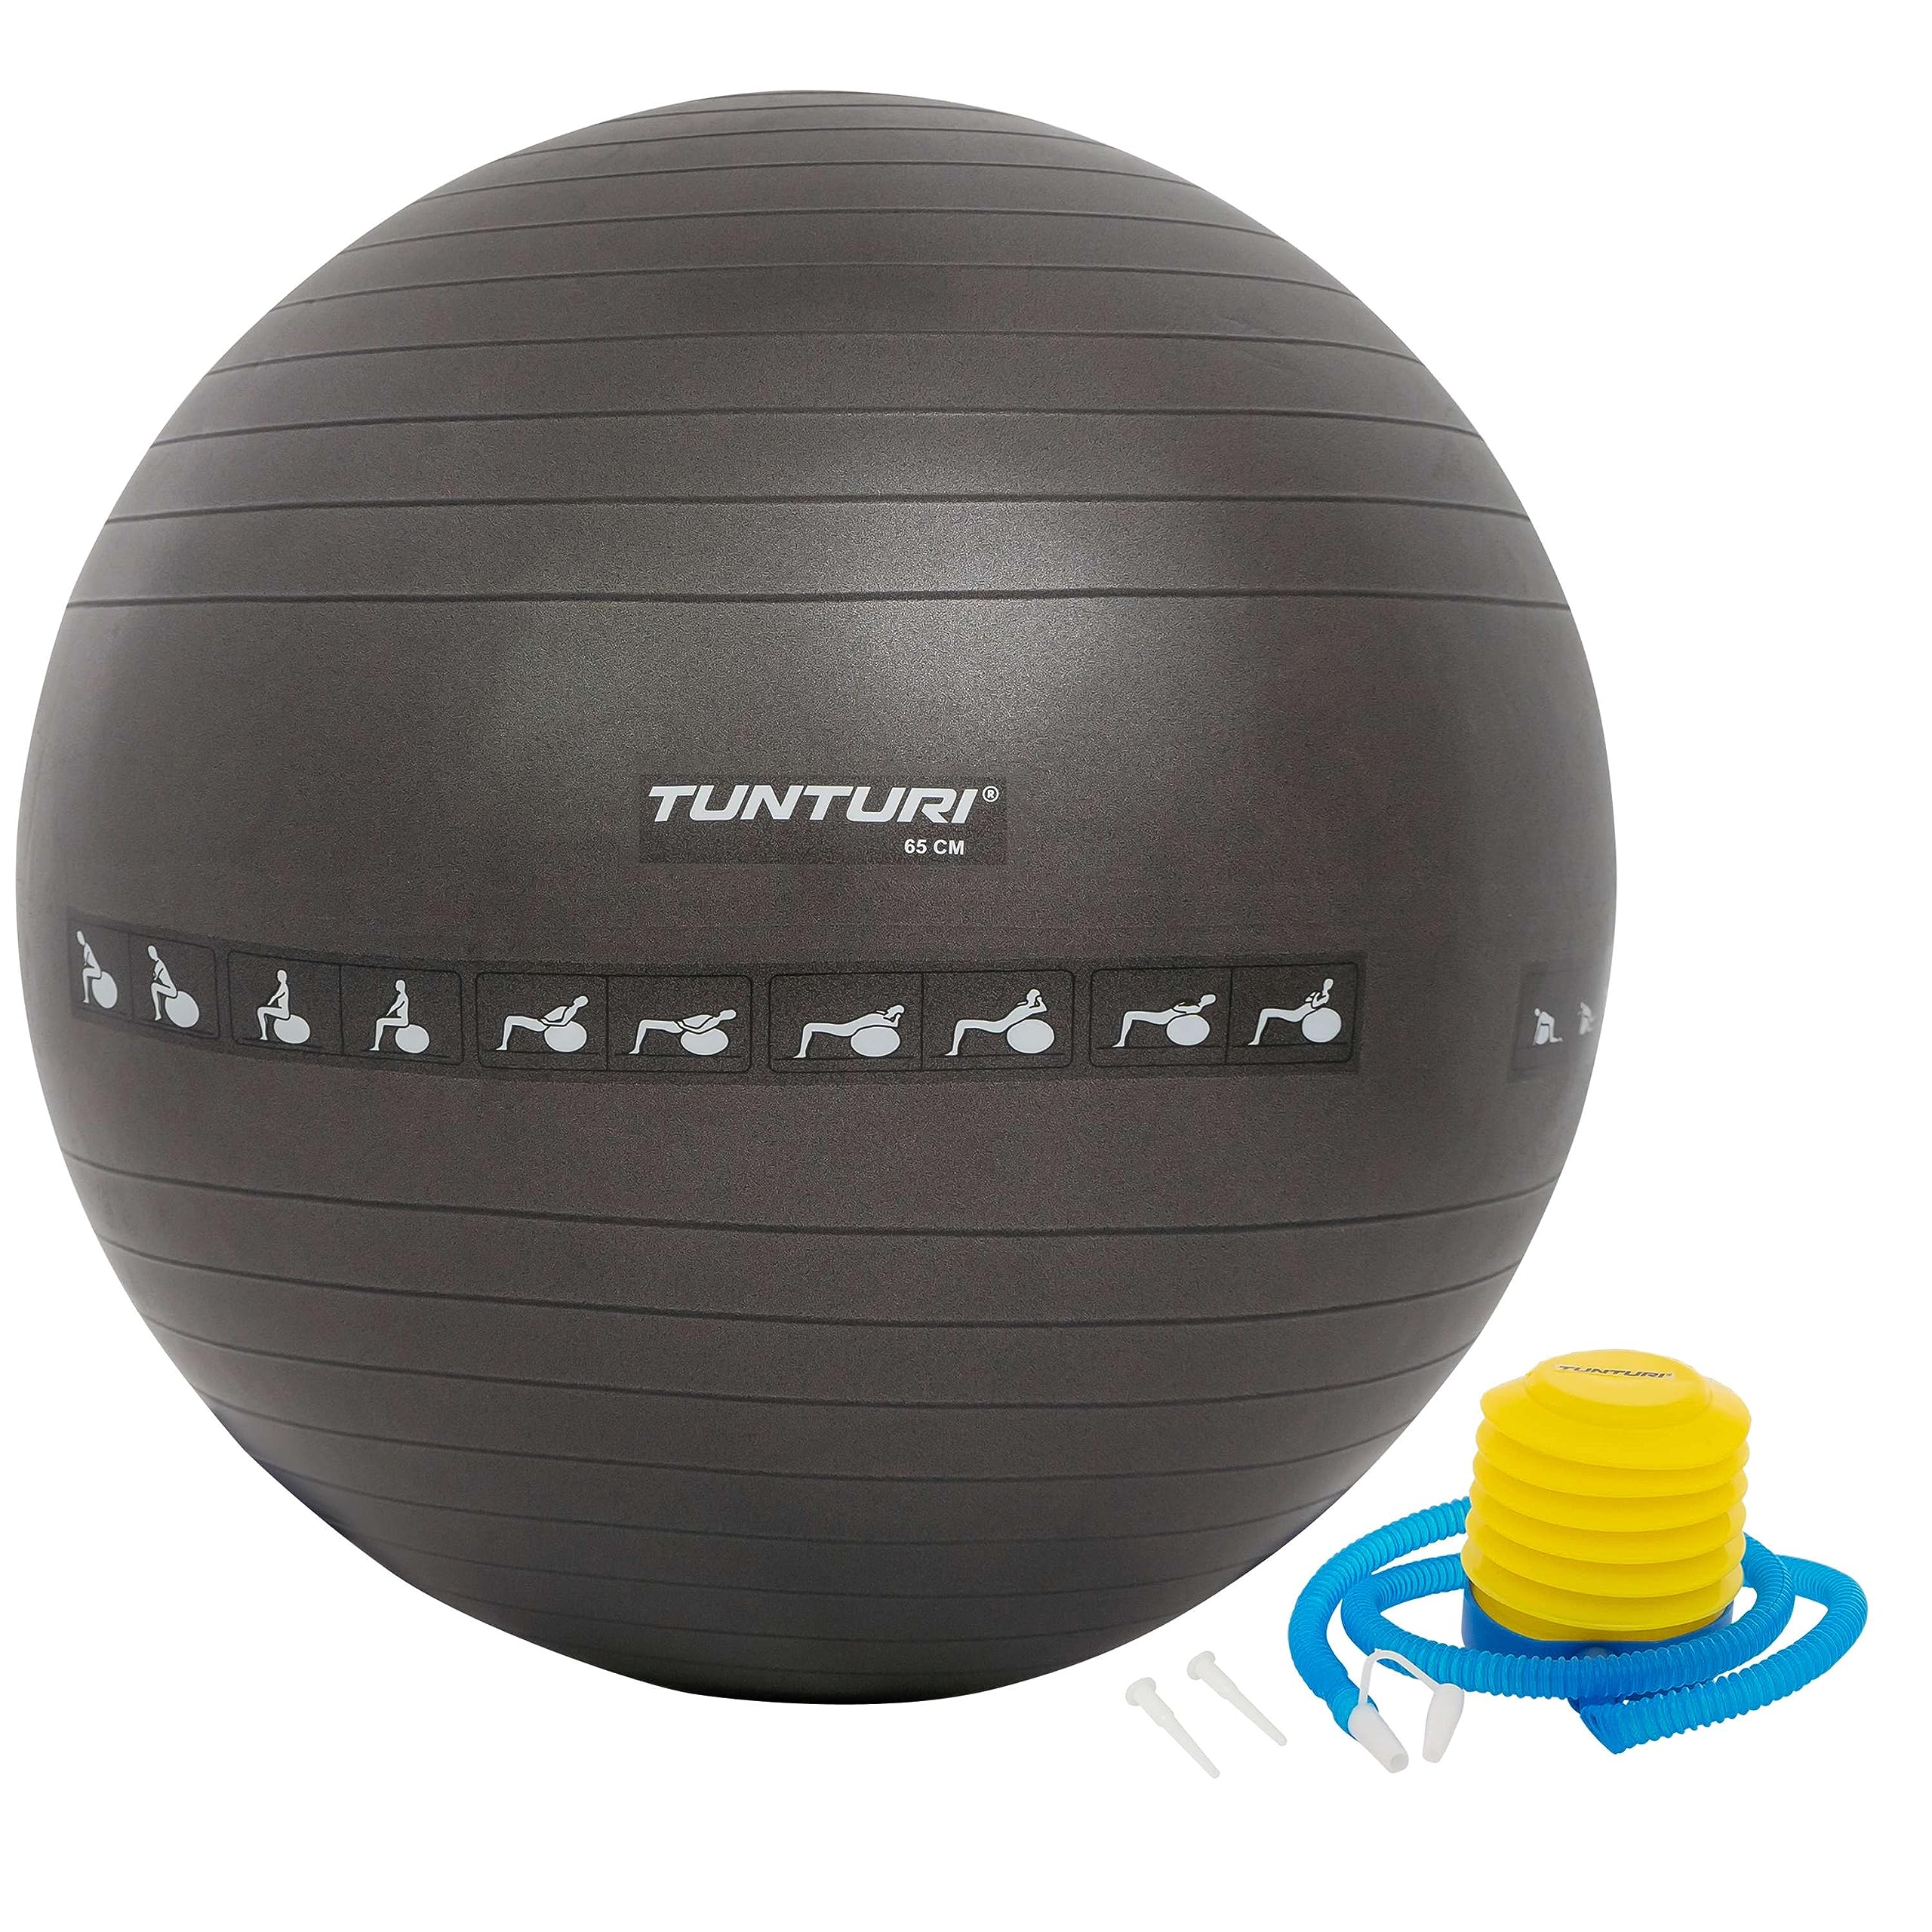 Tunturi Anti Burst Fitnessball mit Pumpe - Yoga-Ball 65 cm - Pilates-Ball - Schwangerschaftsball – 220 kg Benutzergewicht - Inklusive Trainings-App – Schwarz